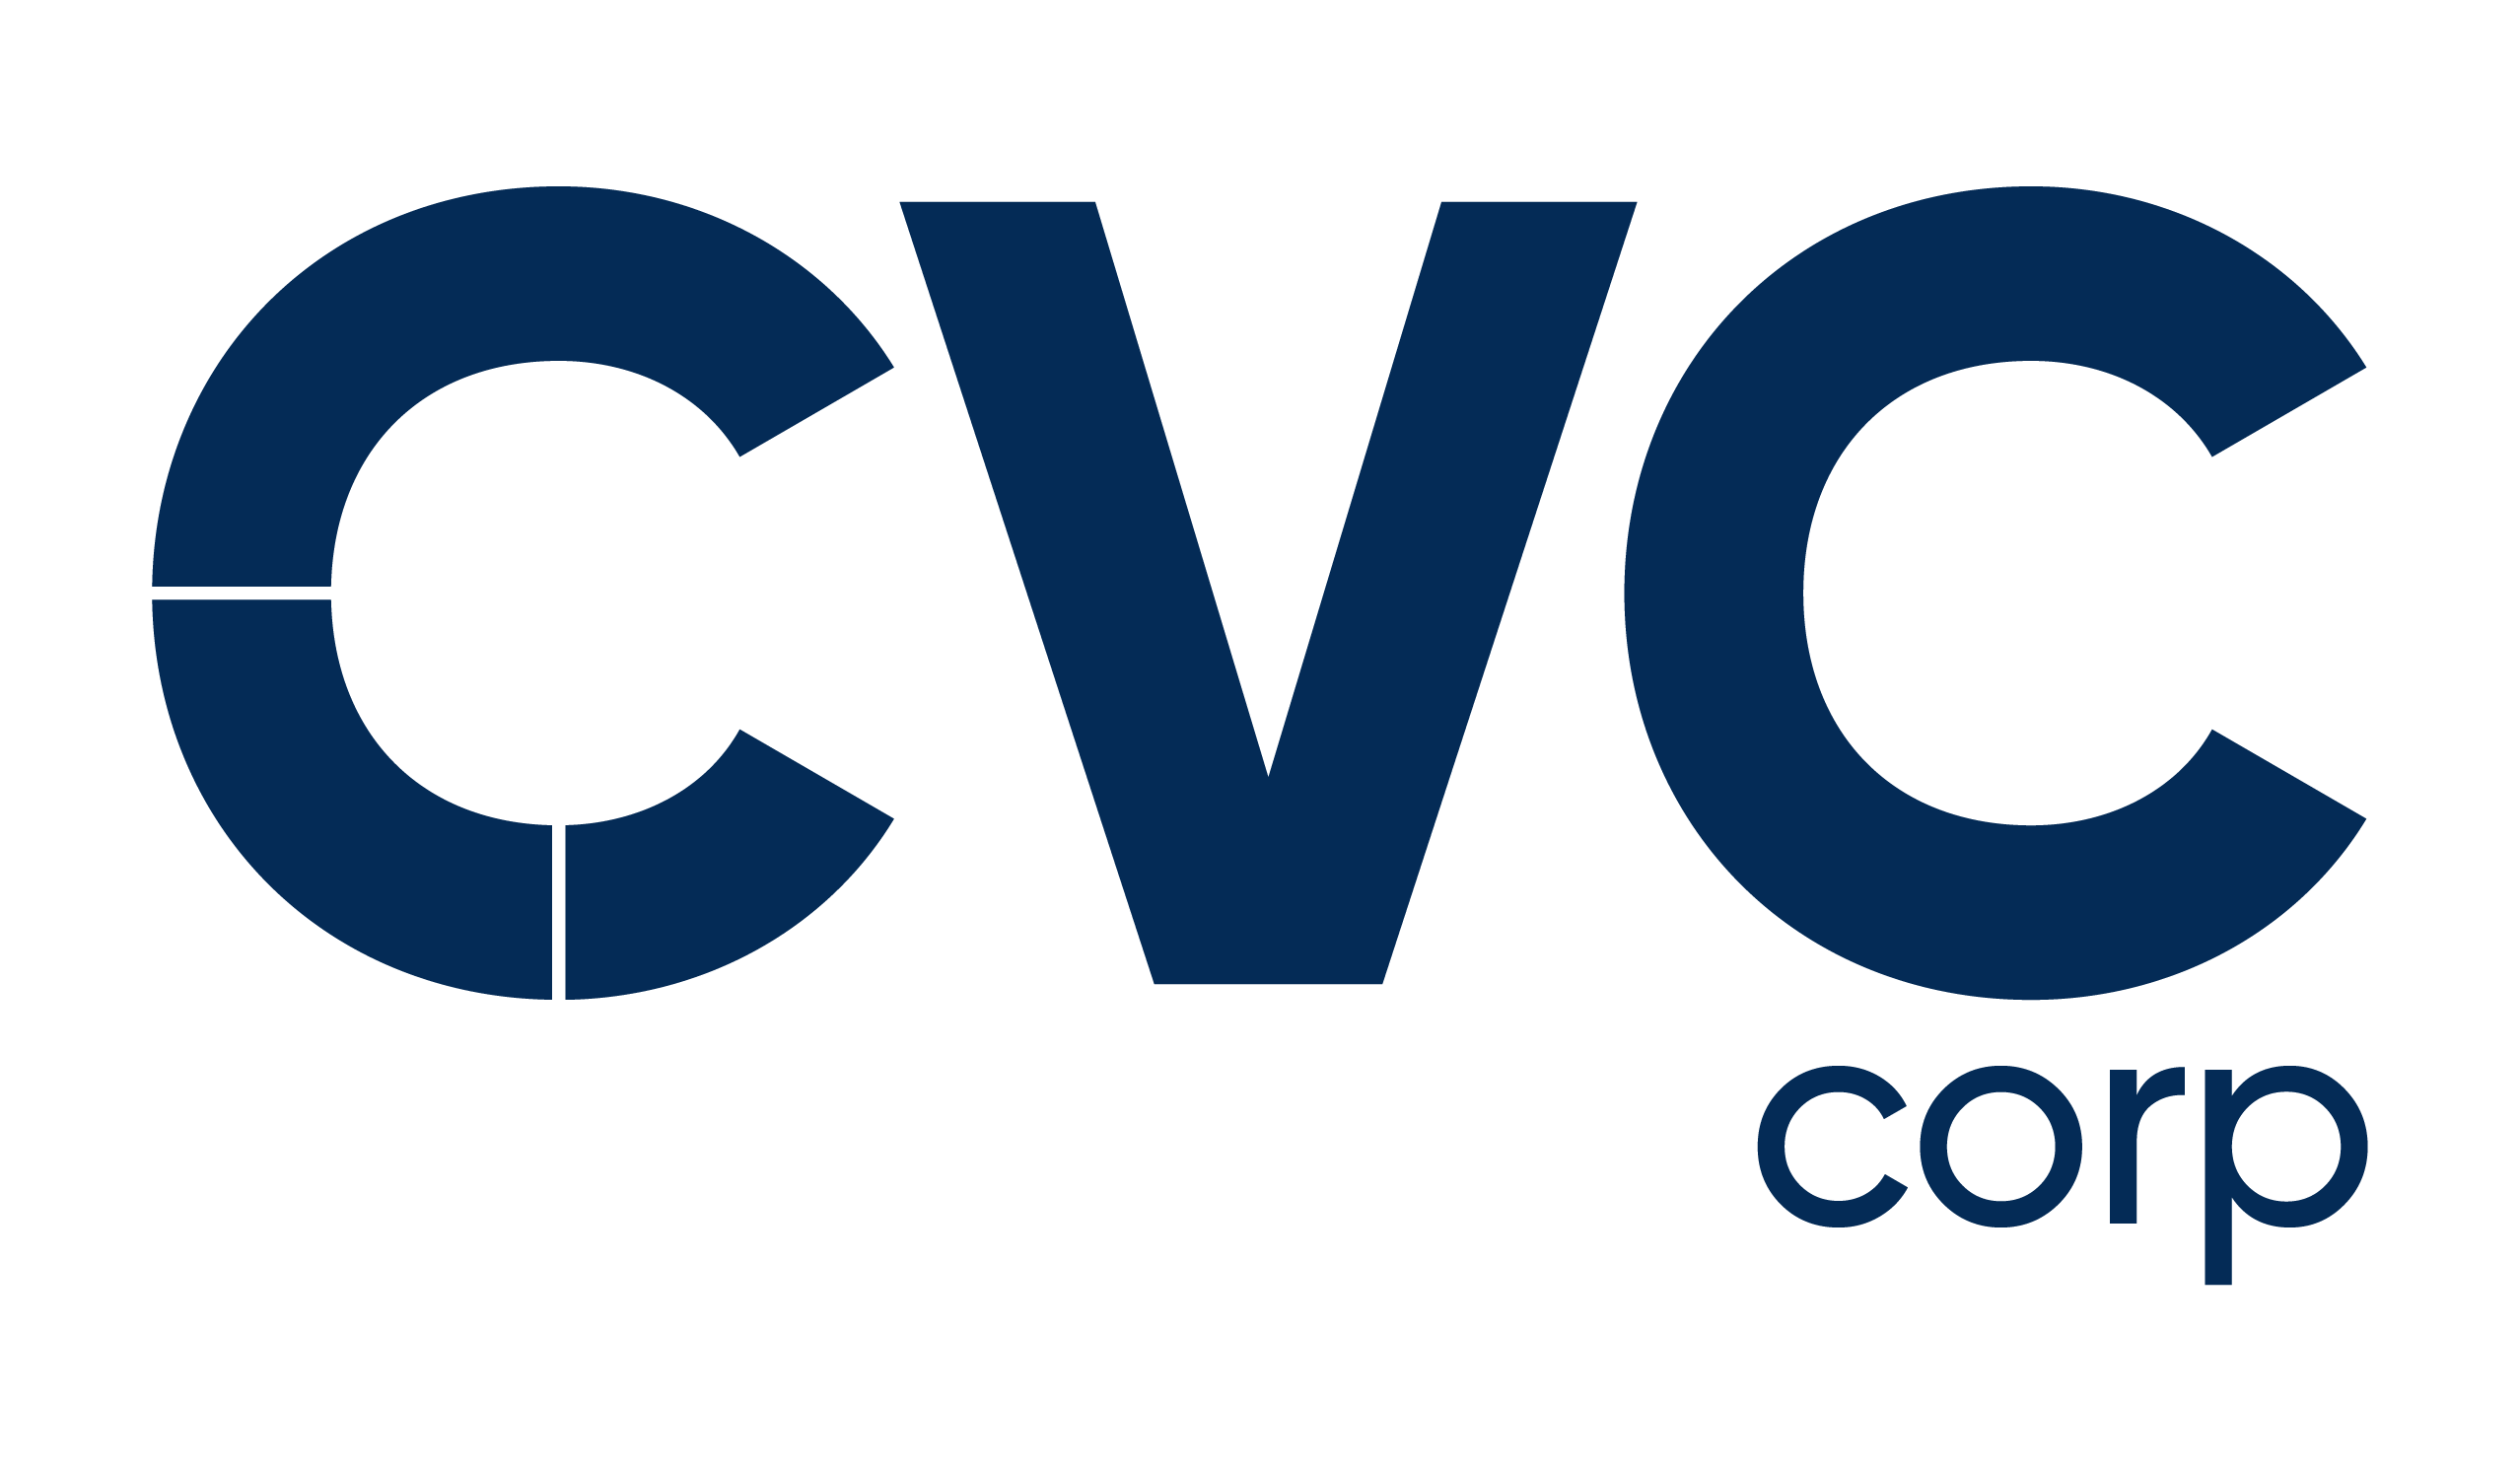 cvccorp-1652128662-logo-cvc-corp-azulpng